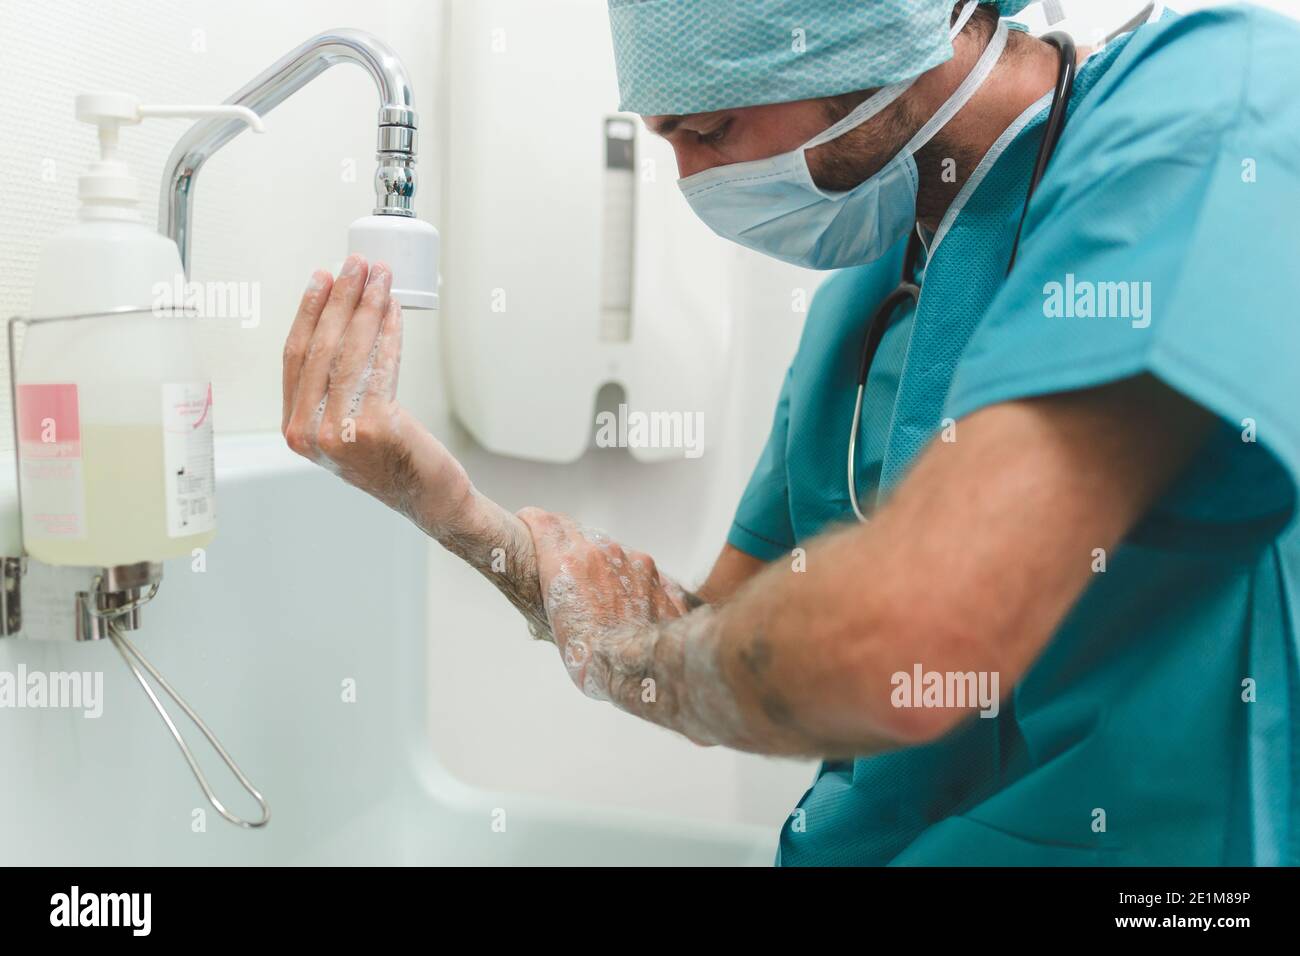 Chirurgo o infermiere lavano le mani prima di un intervento chirurgico Foto Stock